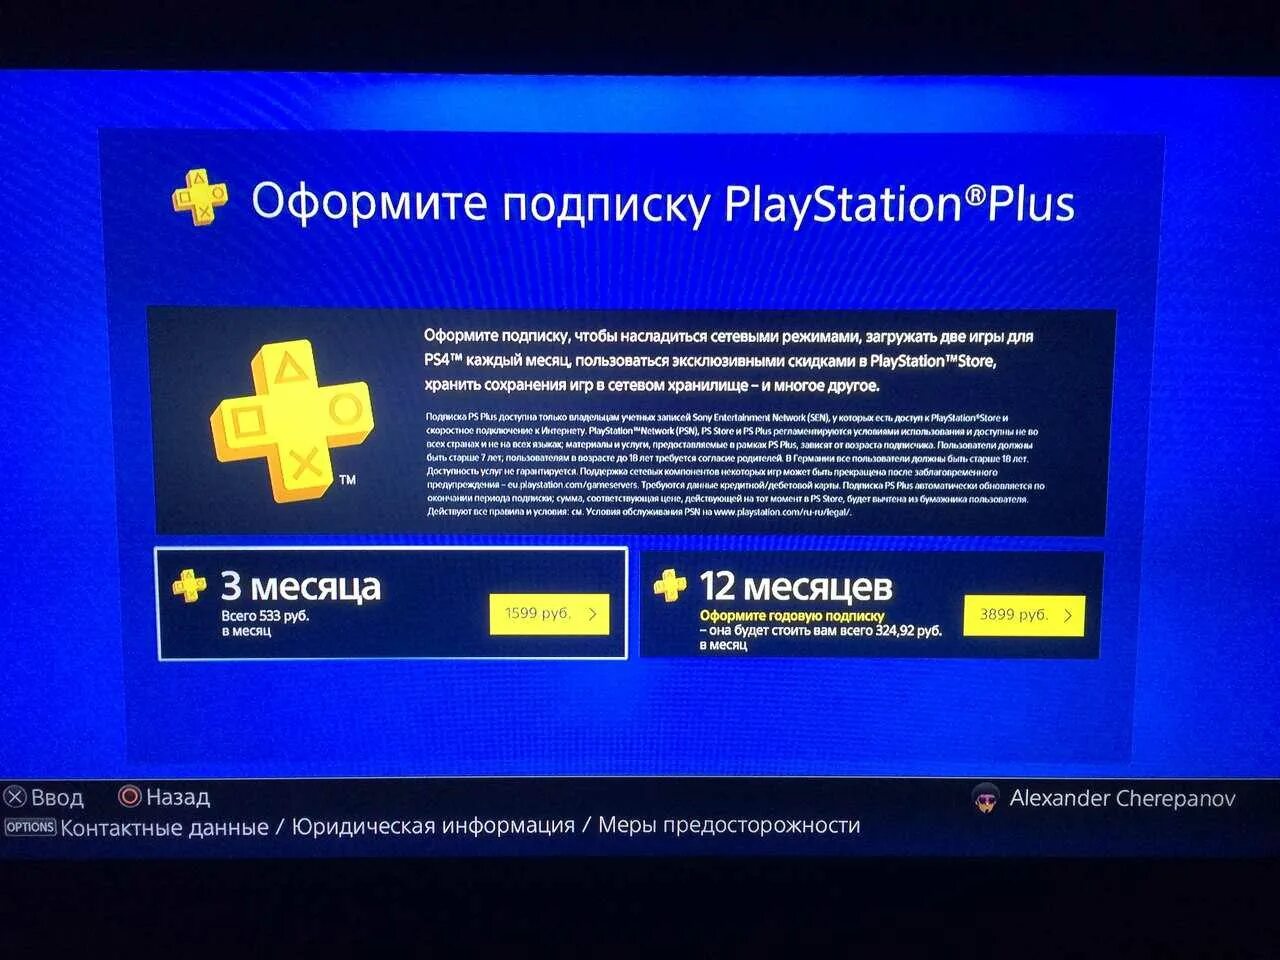 Подписка Sony PLAYSTATION Plus. Подписка PS Plus ps5. Подписка на PLAYSTATION Plus ps4. PLAYSTATION подписки в игры Plus на ps4. Игры в плейстейшен плюс